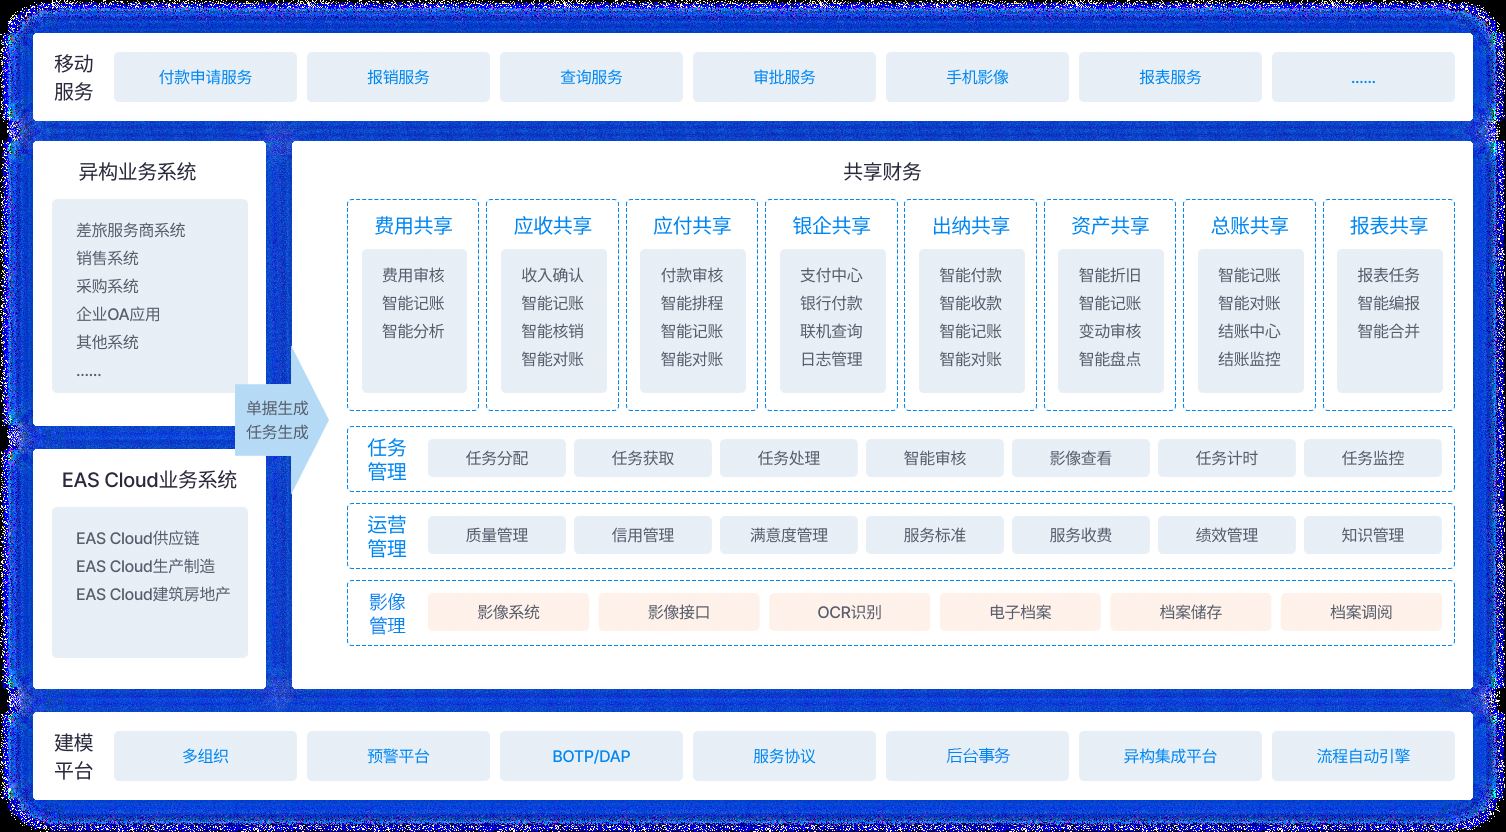 博博乐娱乐游戏 波音开户登入最新网址业务架构图